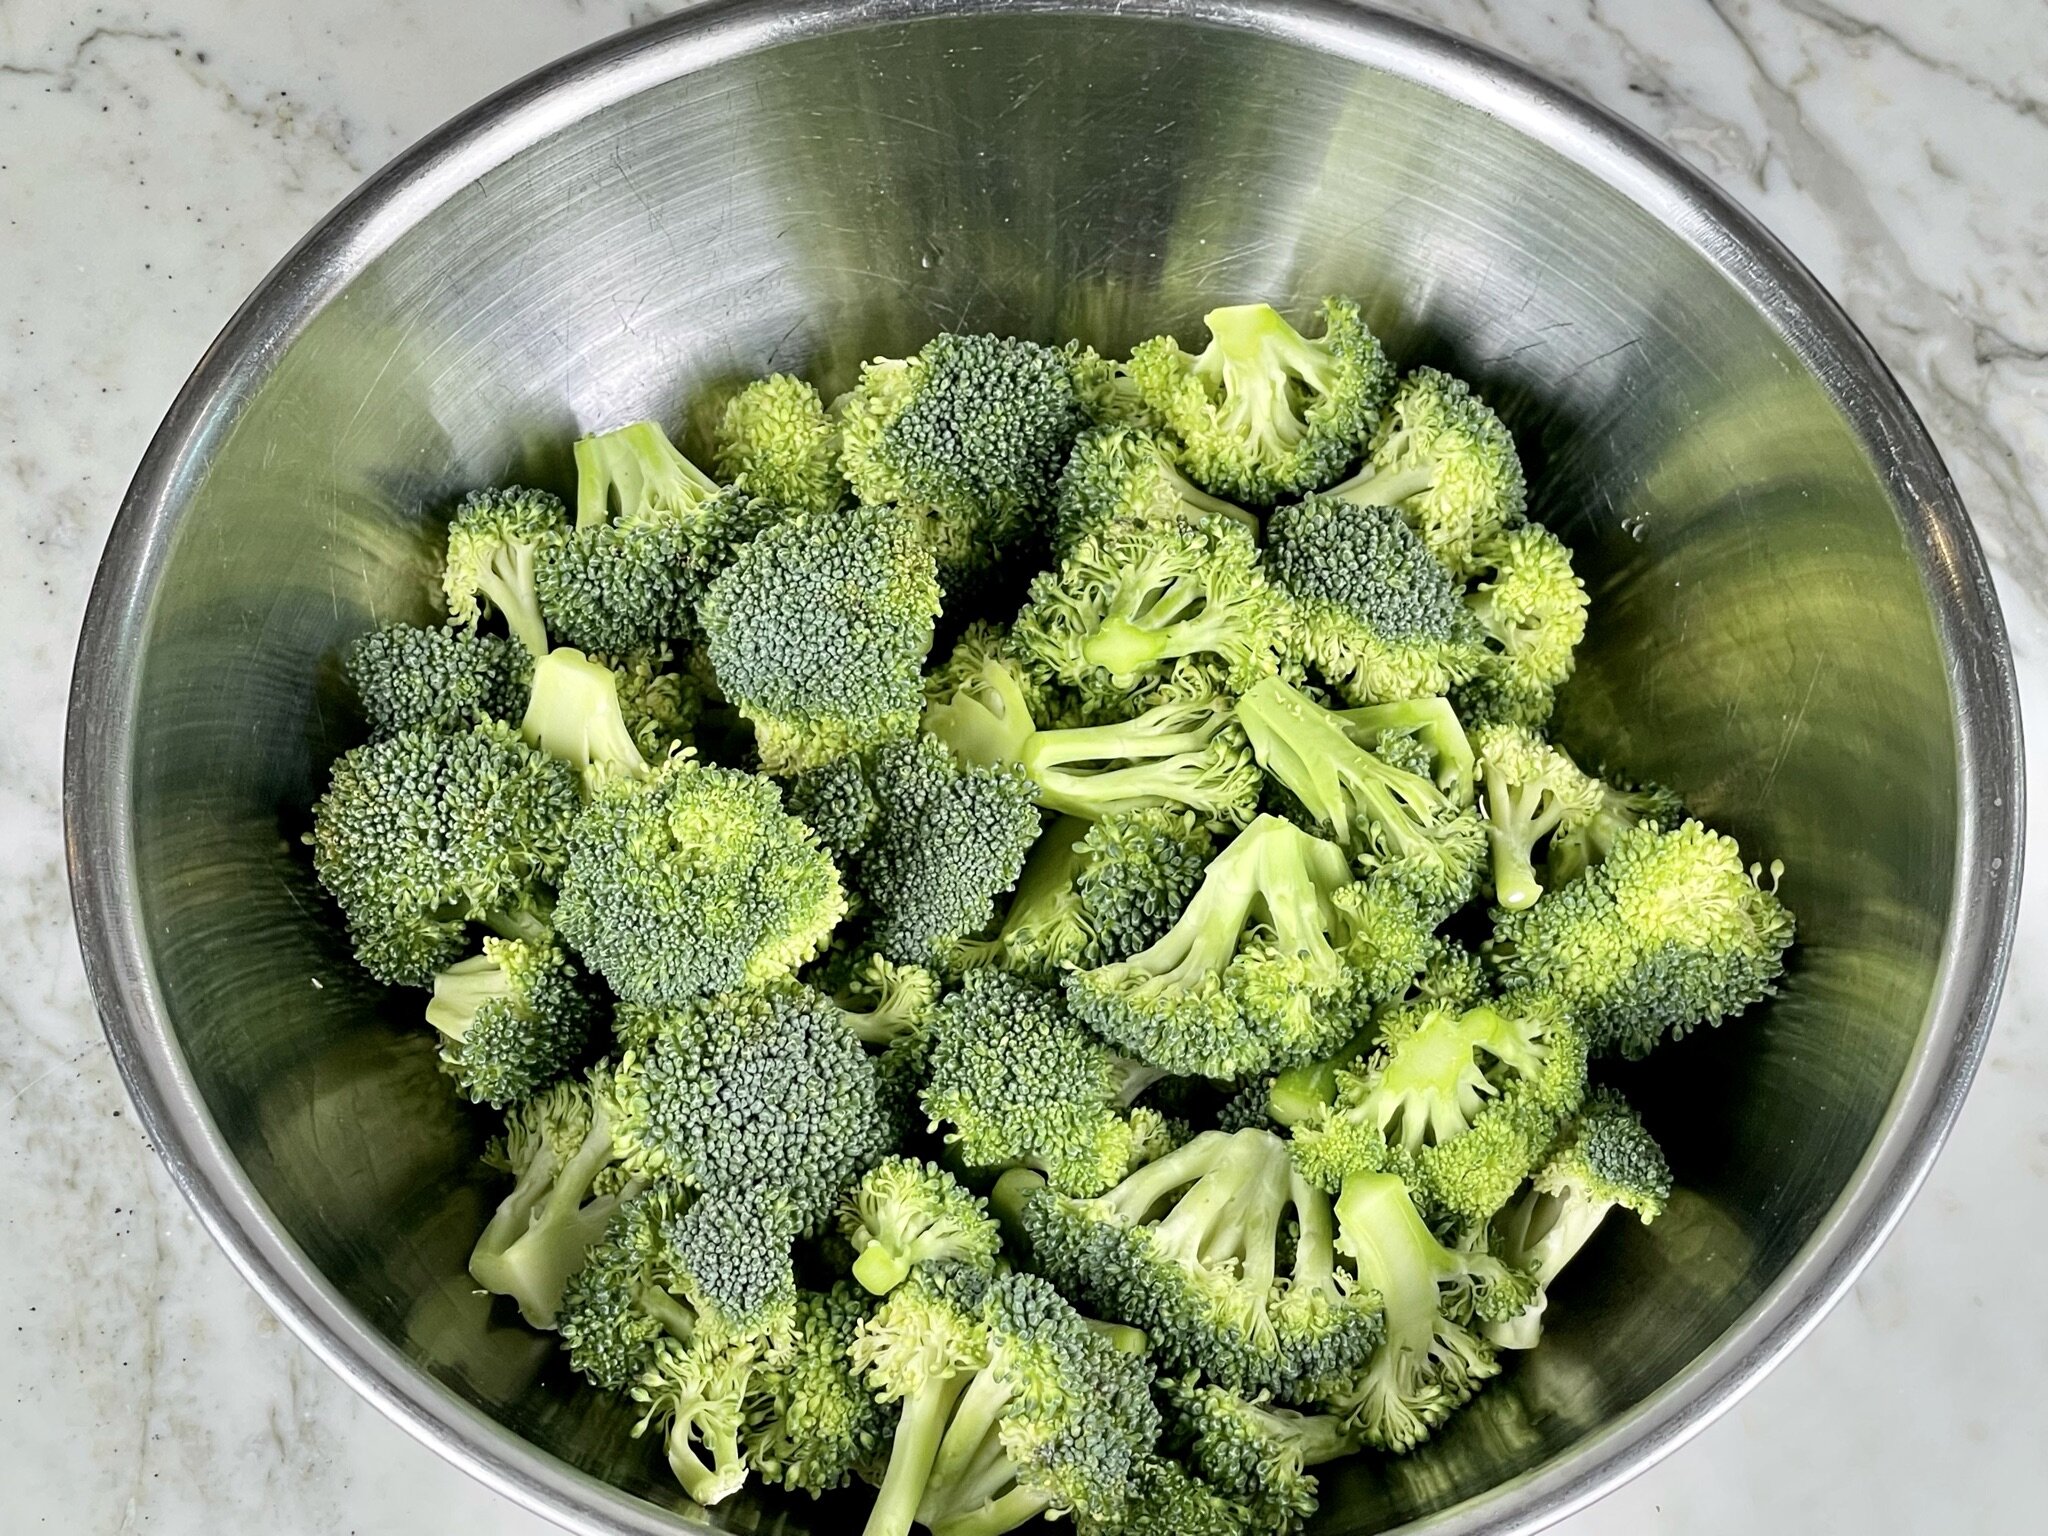 Add broccoli.